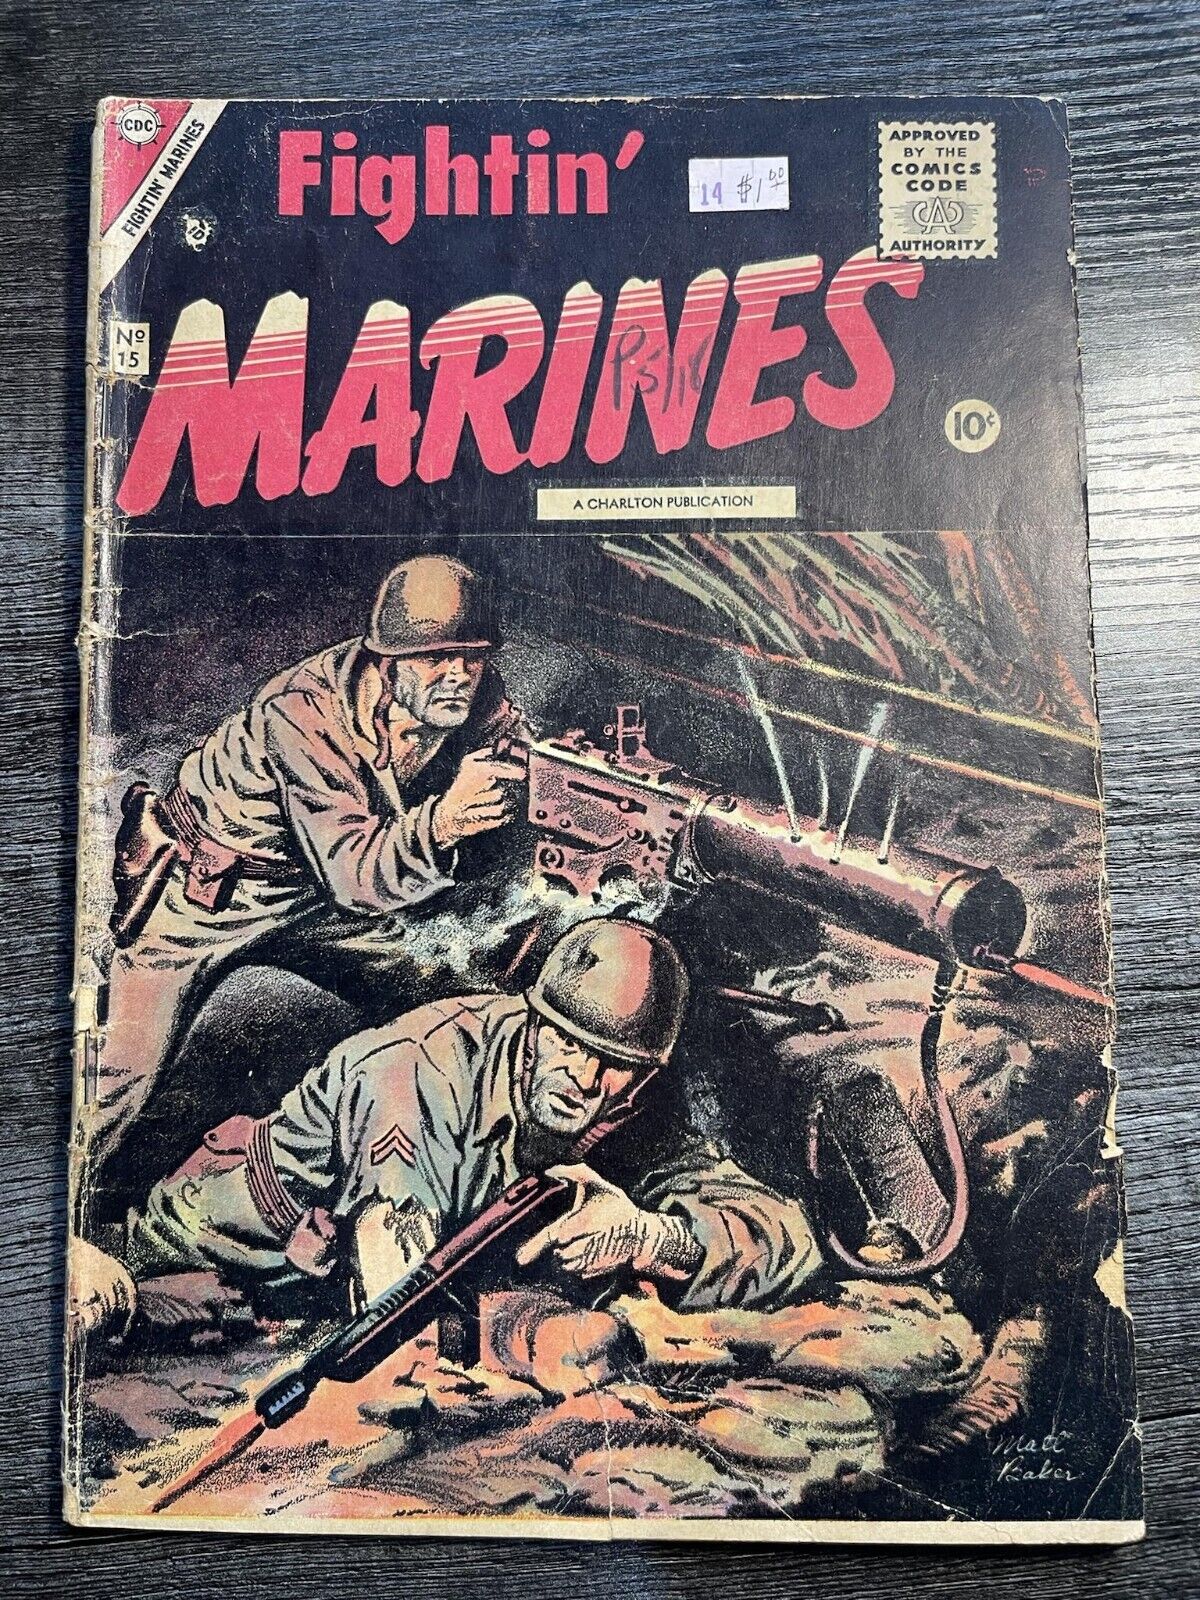 Fightin' Marines #15  Charlton | low grade - July 1955 Matt Baker - GD-